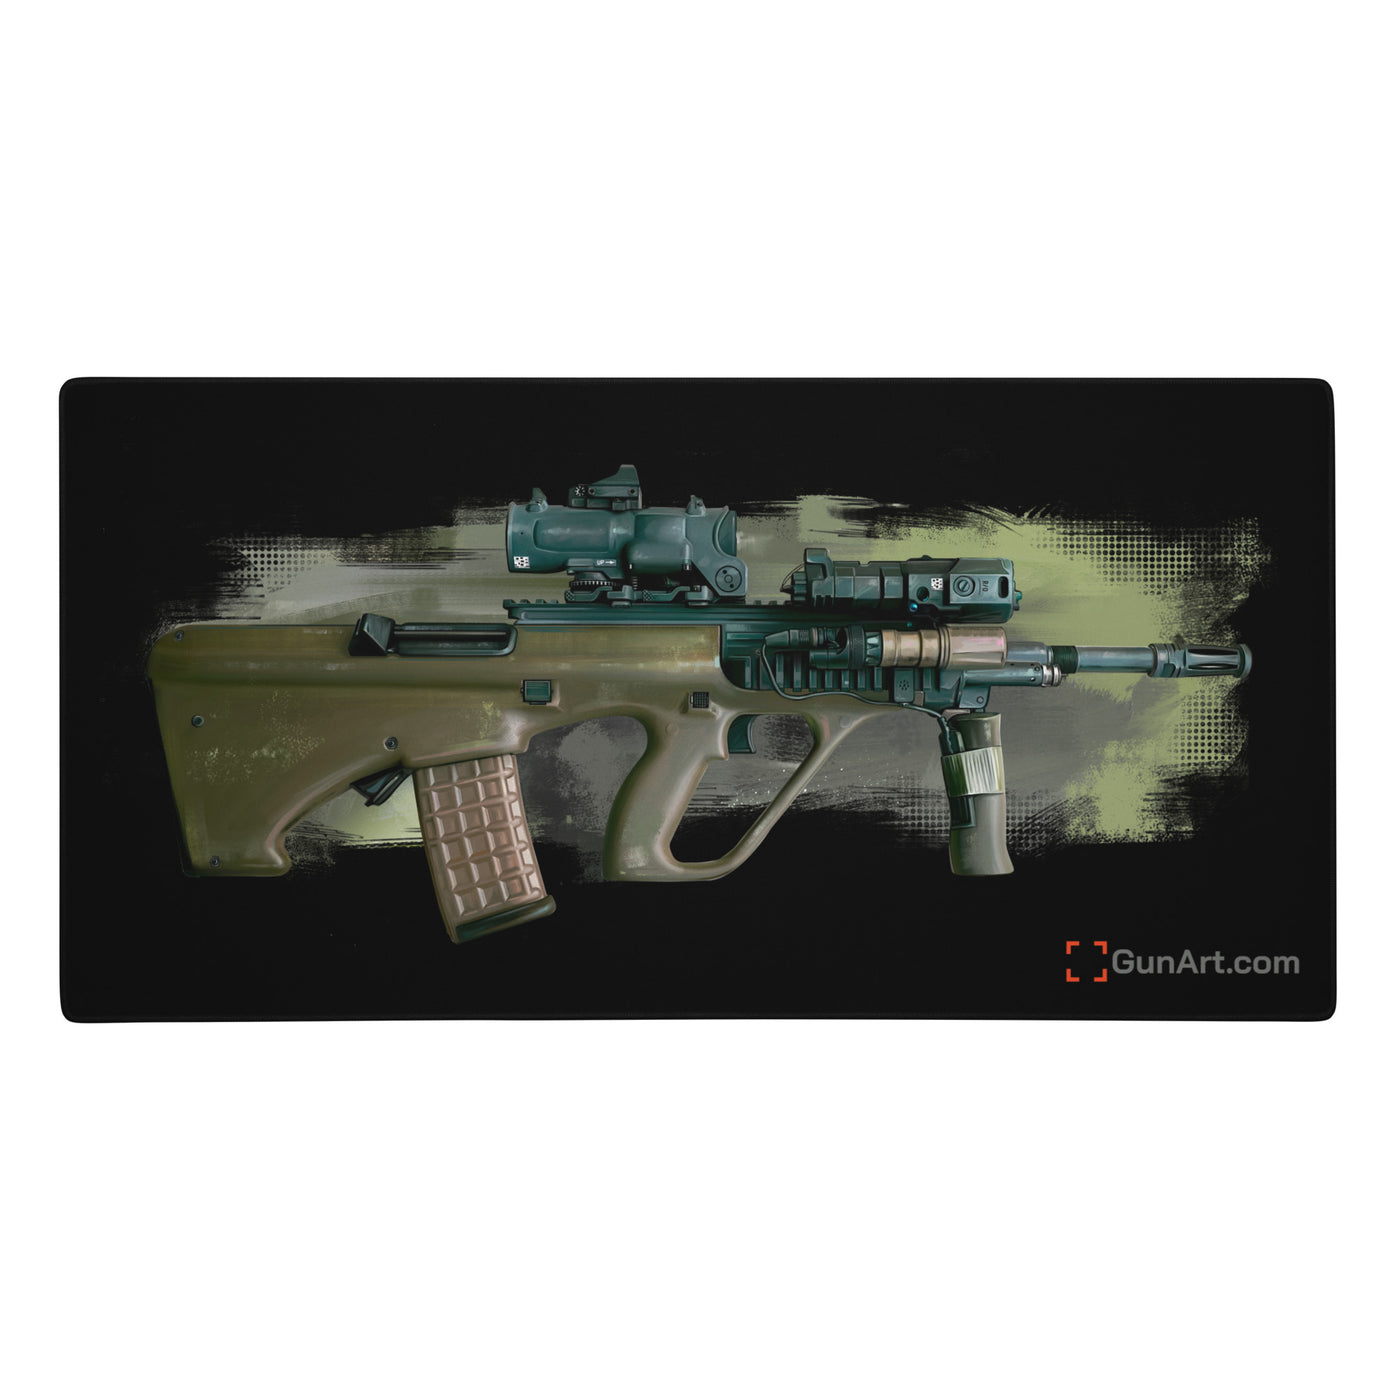 Universal Army Bullpup Rifle Gaming Mouse Pad/ Gunsmithing Mat